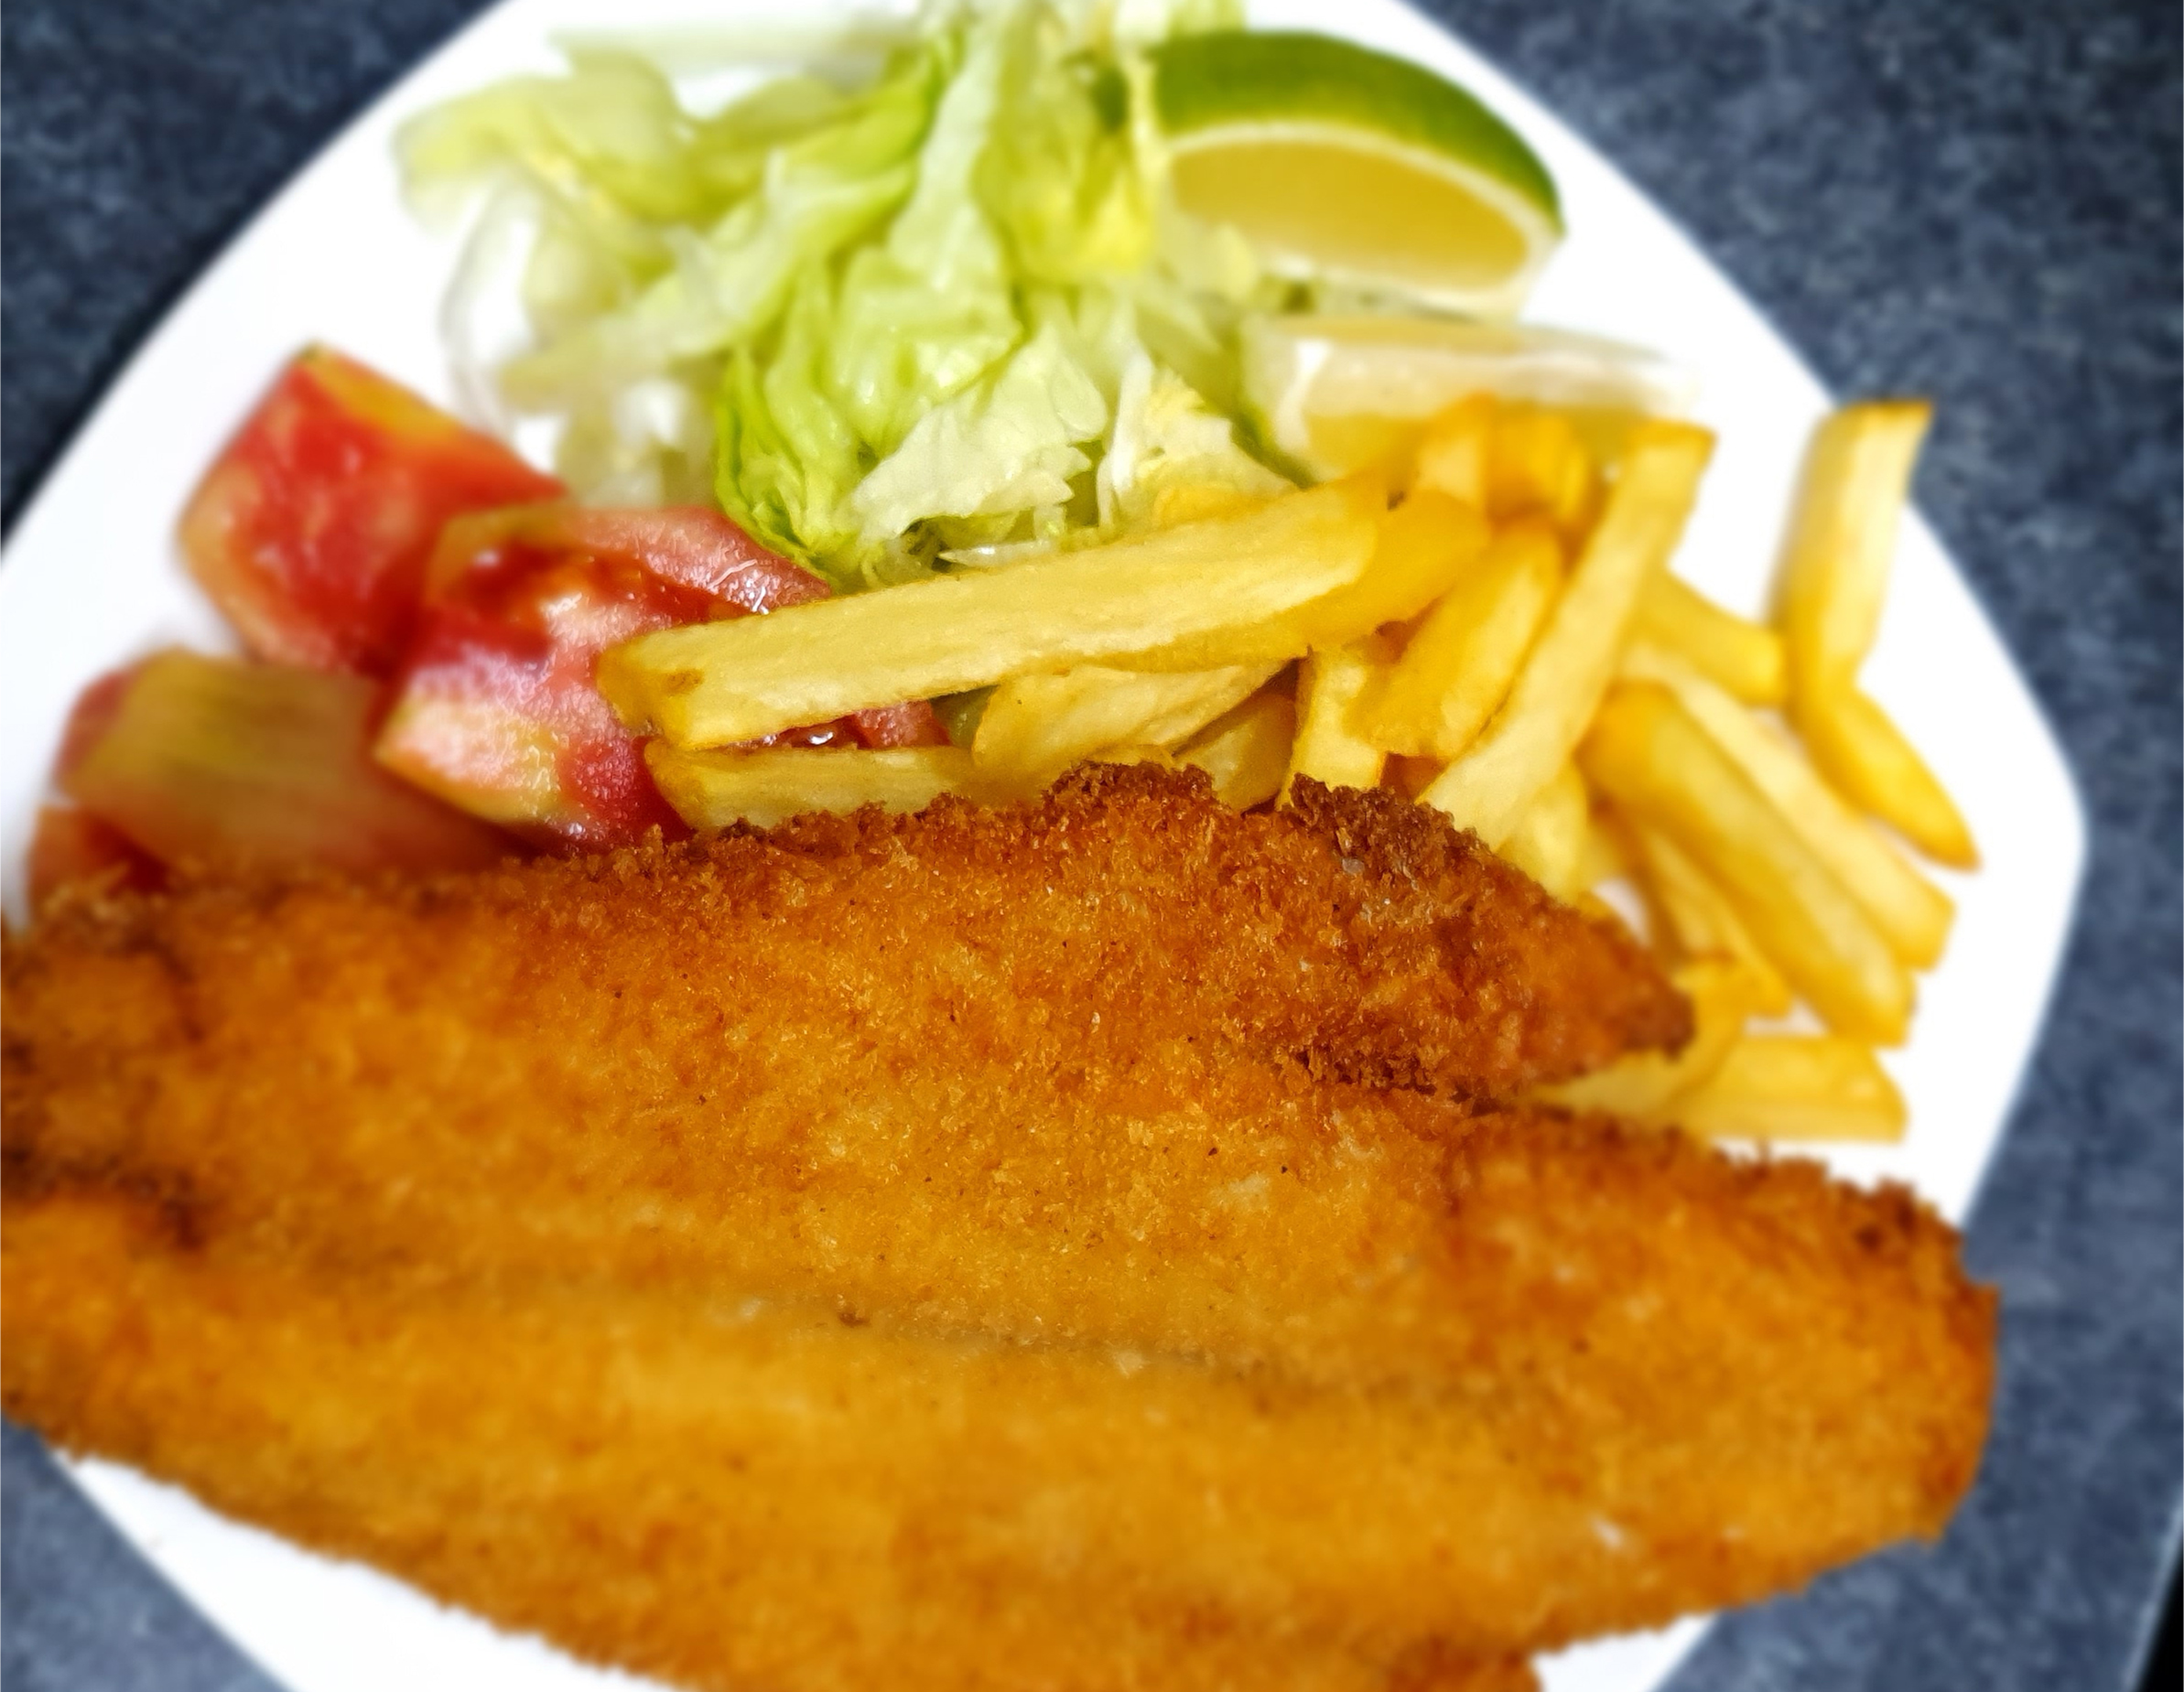 “El
pescado frito es el plato estrella en un ambiente hogareño y familiar”